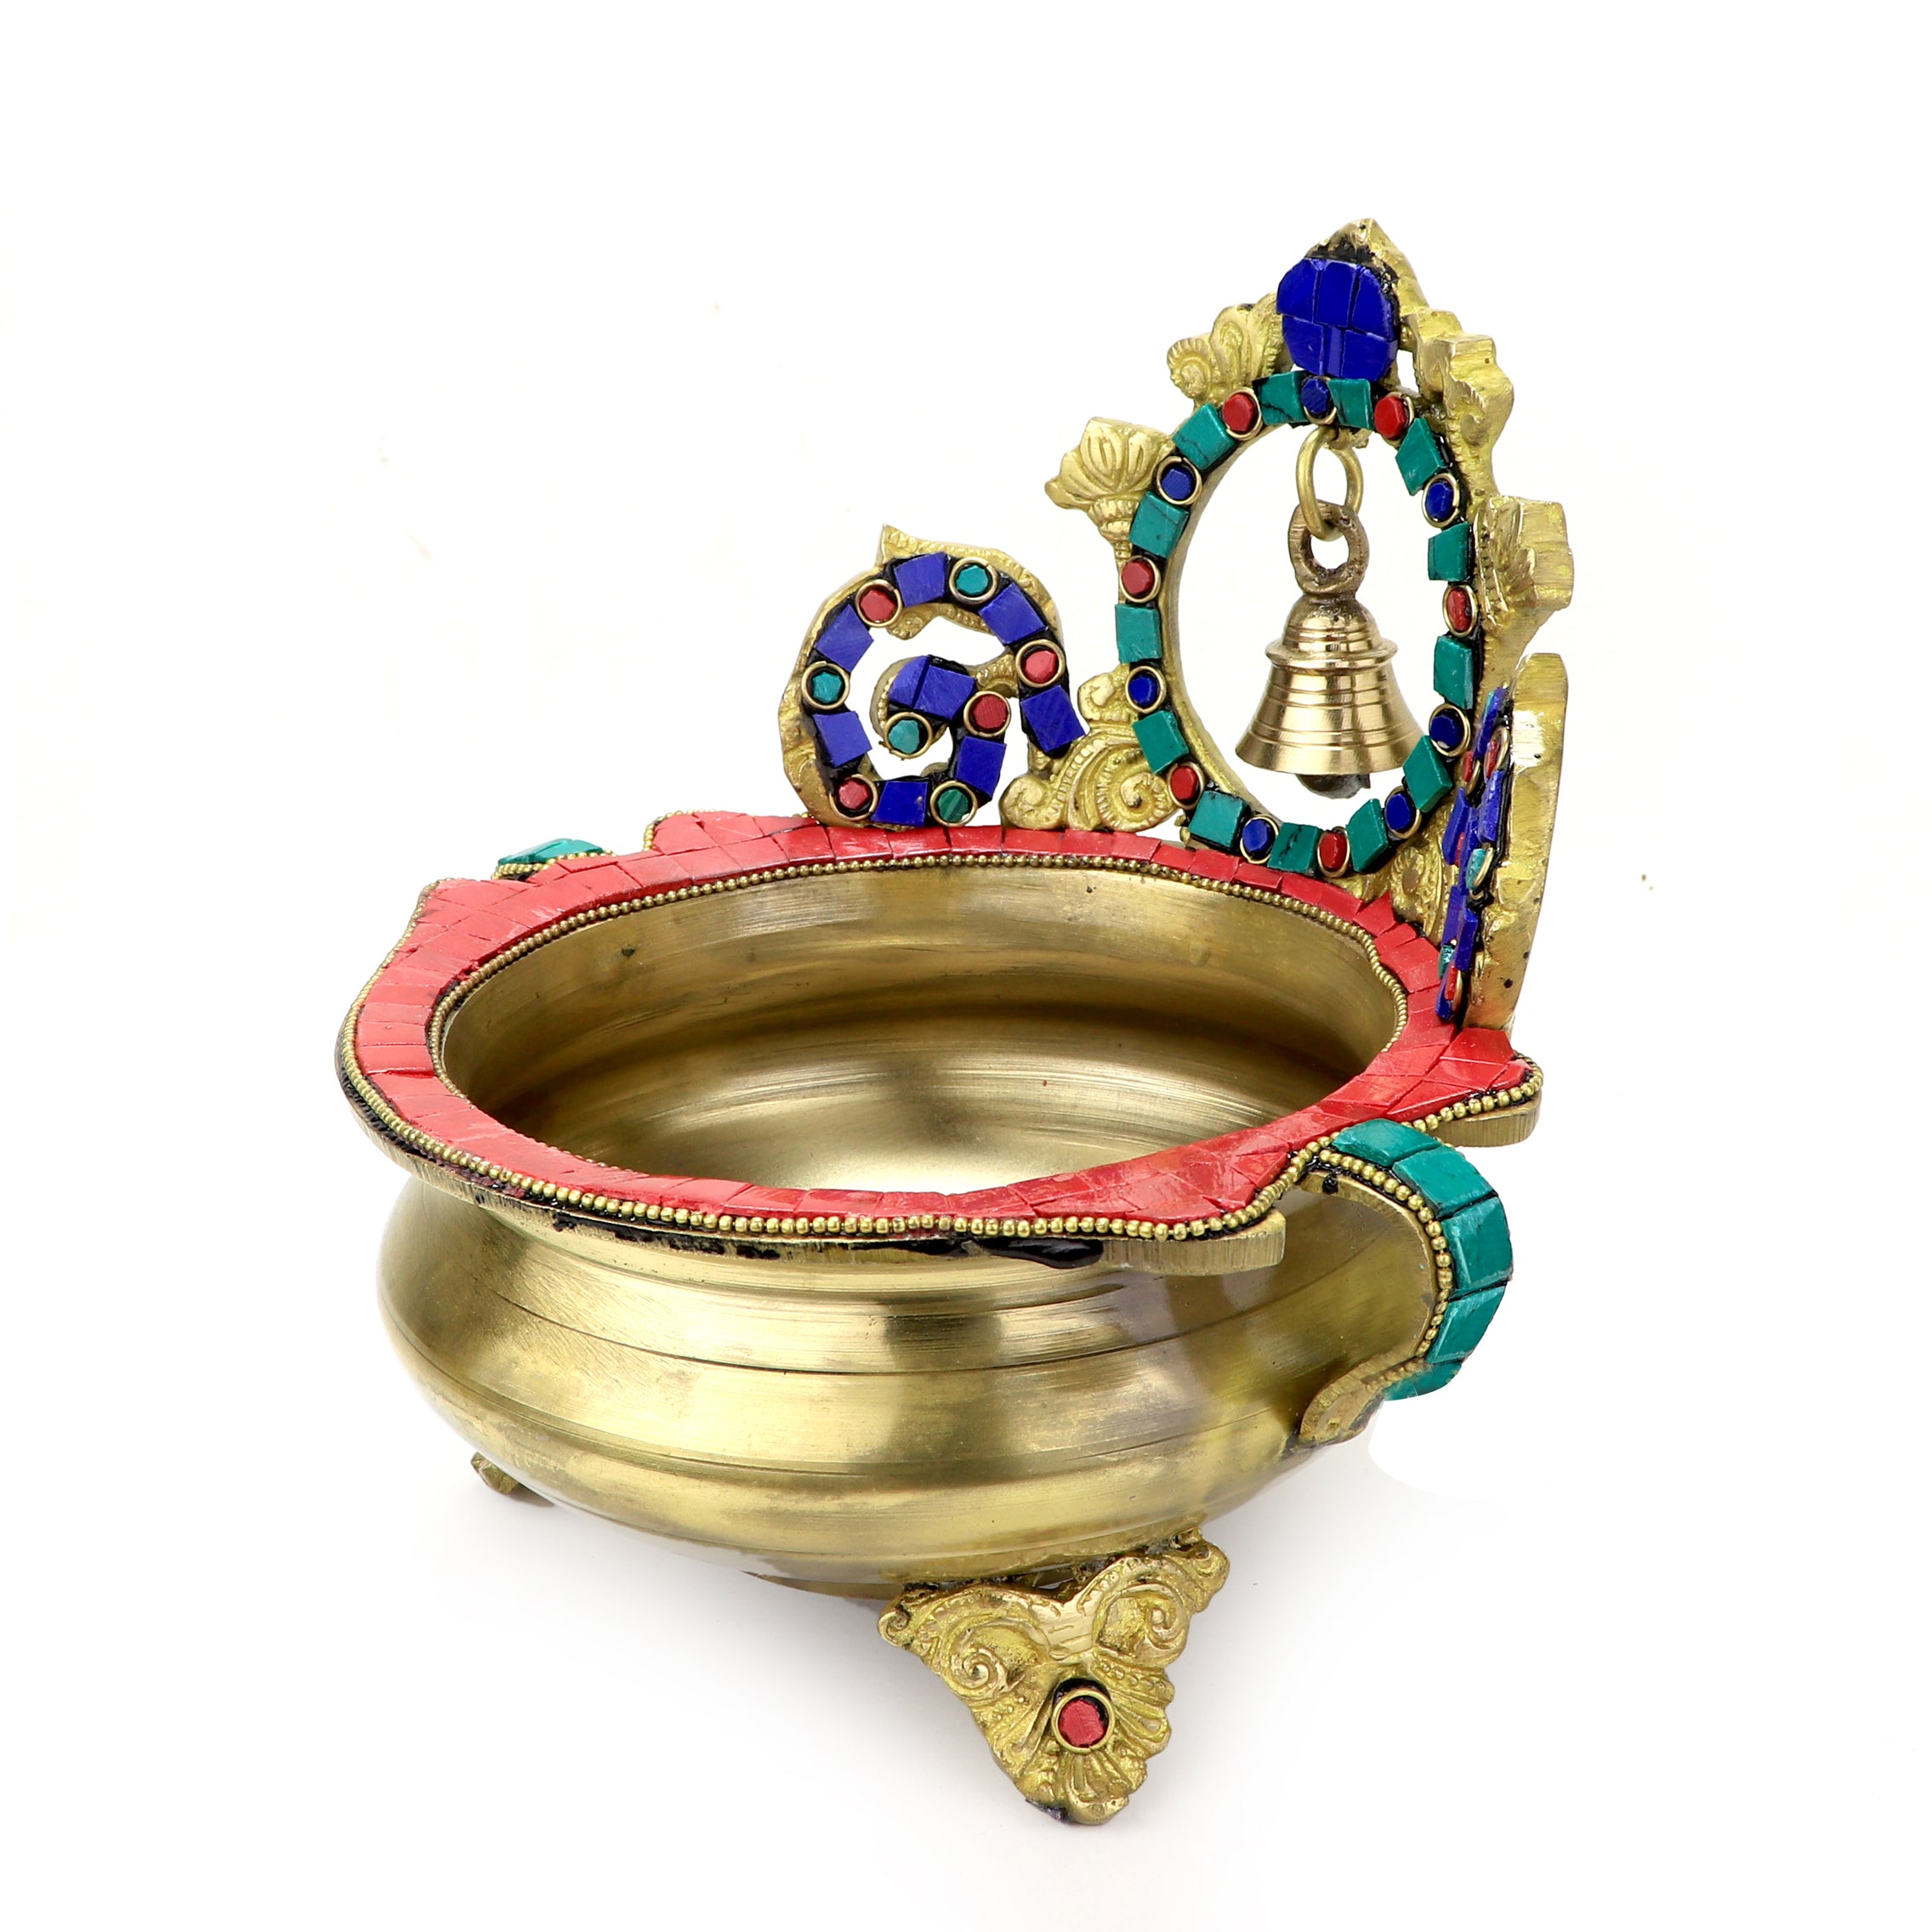 Brass Gemstone Work Ethnic Carved 7 Inches Décor Urli Showpiece with Bell